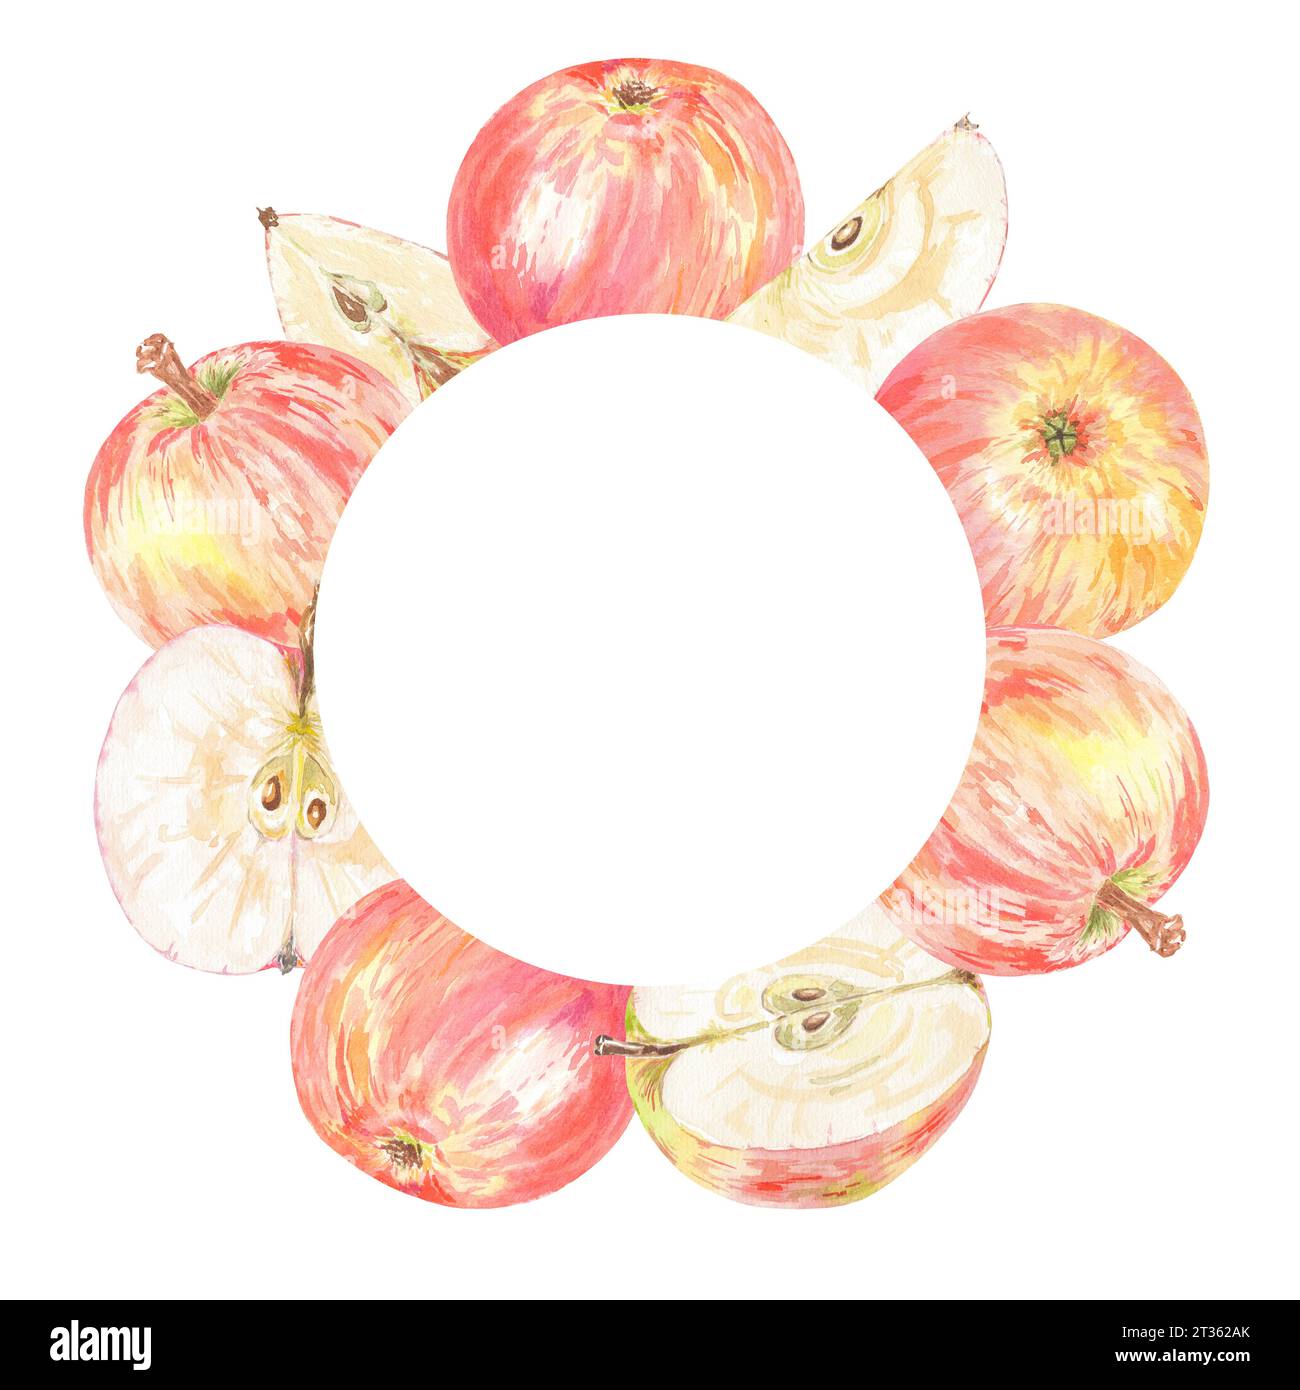 Aquarellrahmen Kranz Apfel rot isolierte Illustration auf weißem Hintergrund. Herbstfrucht für Logo, Menü, Karte. Kunst für Design. Gesunde Ernährung Stockfoto